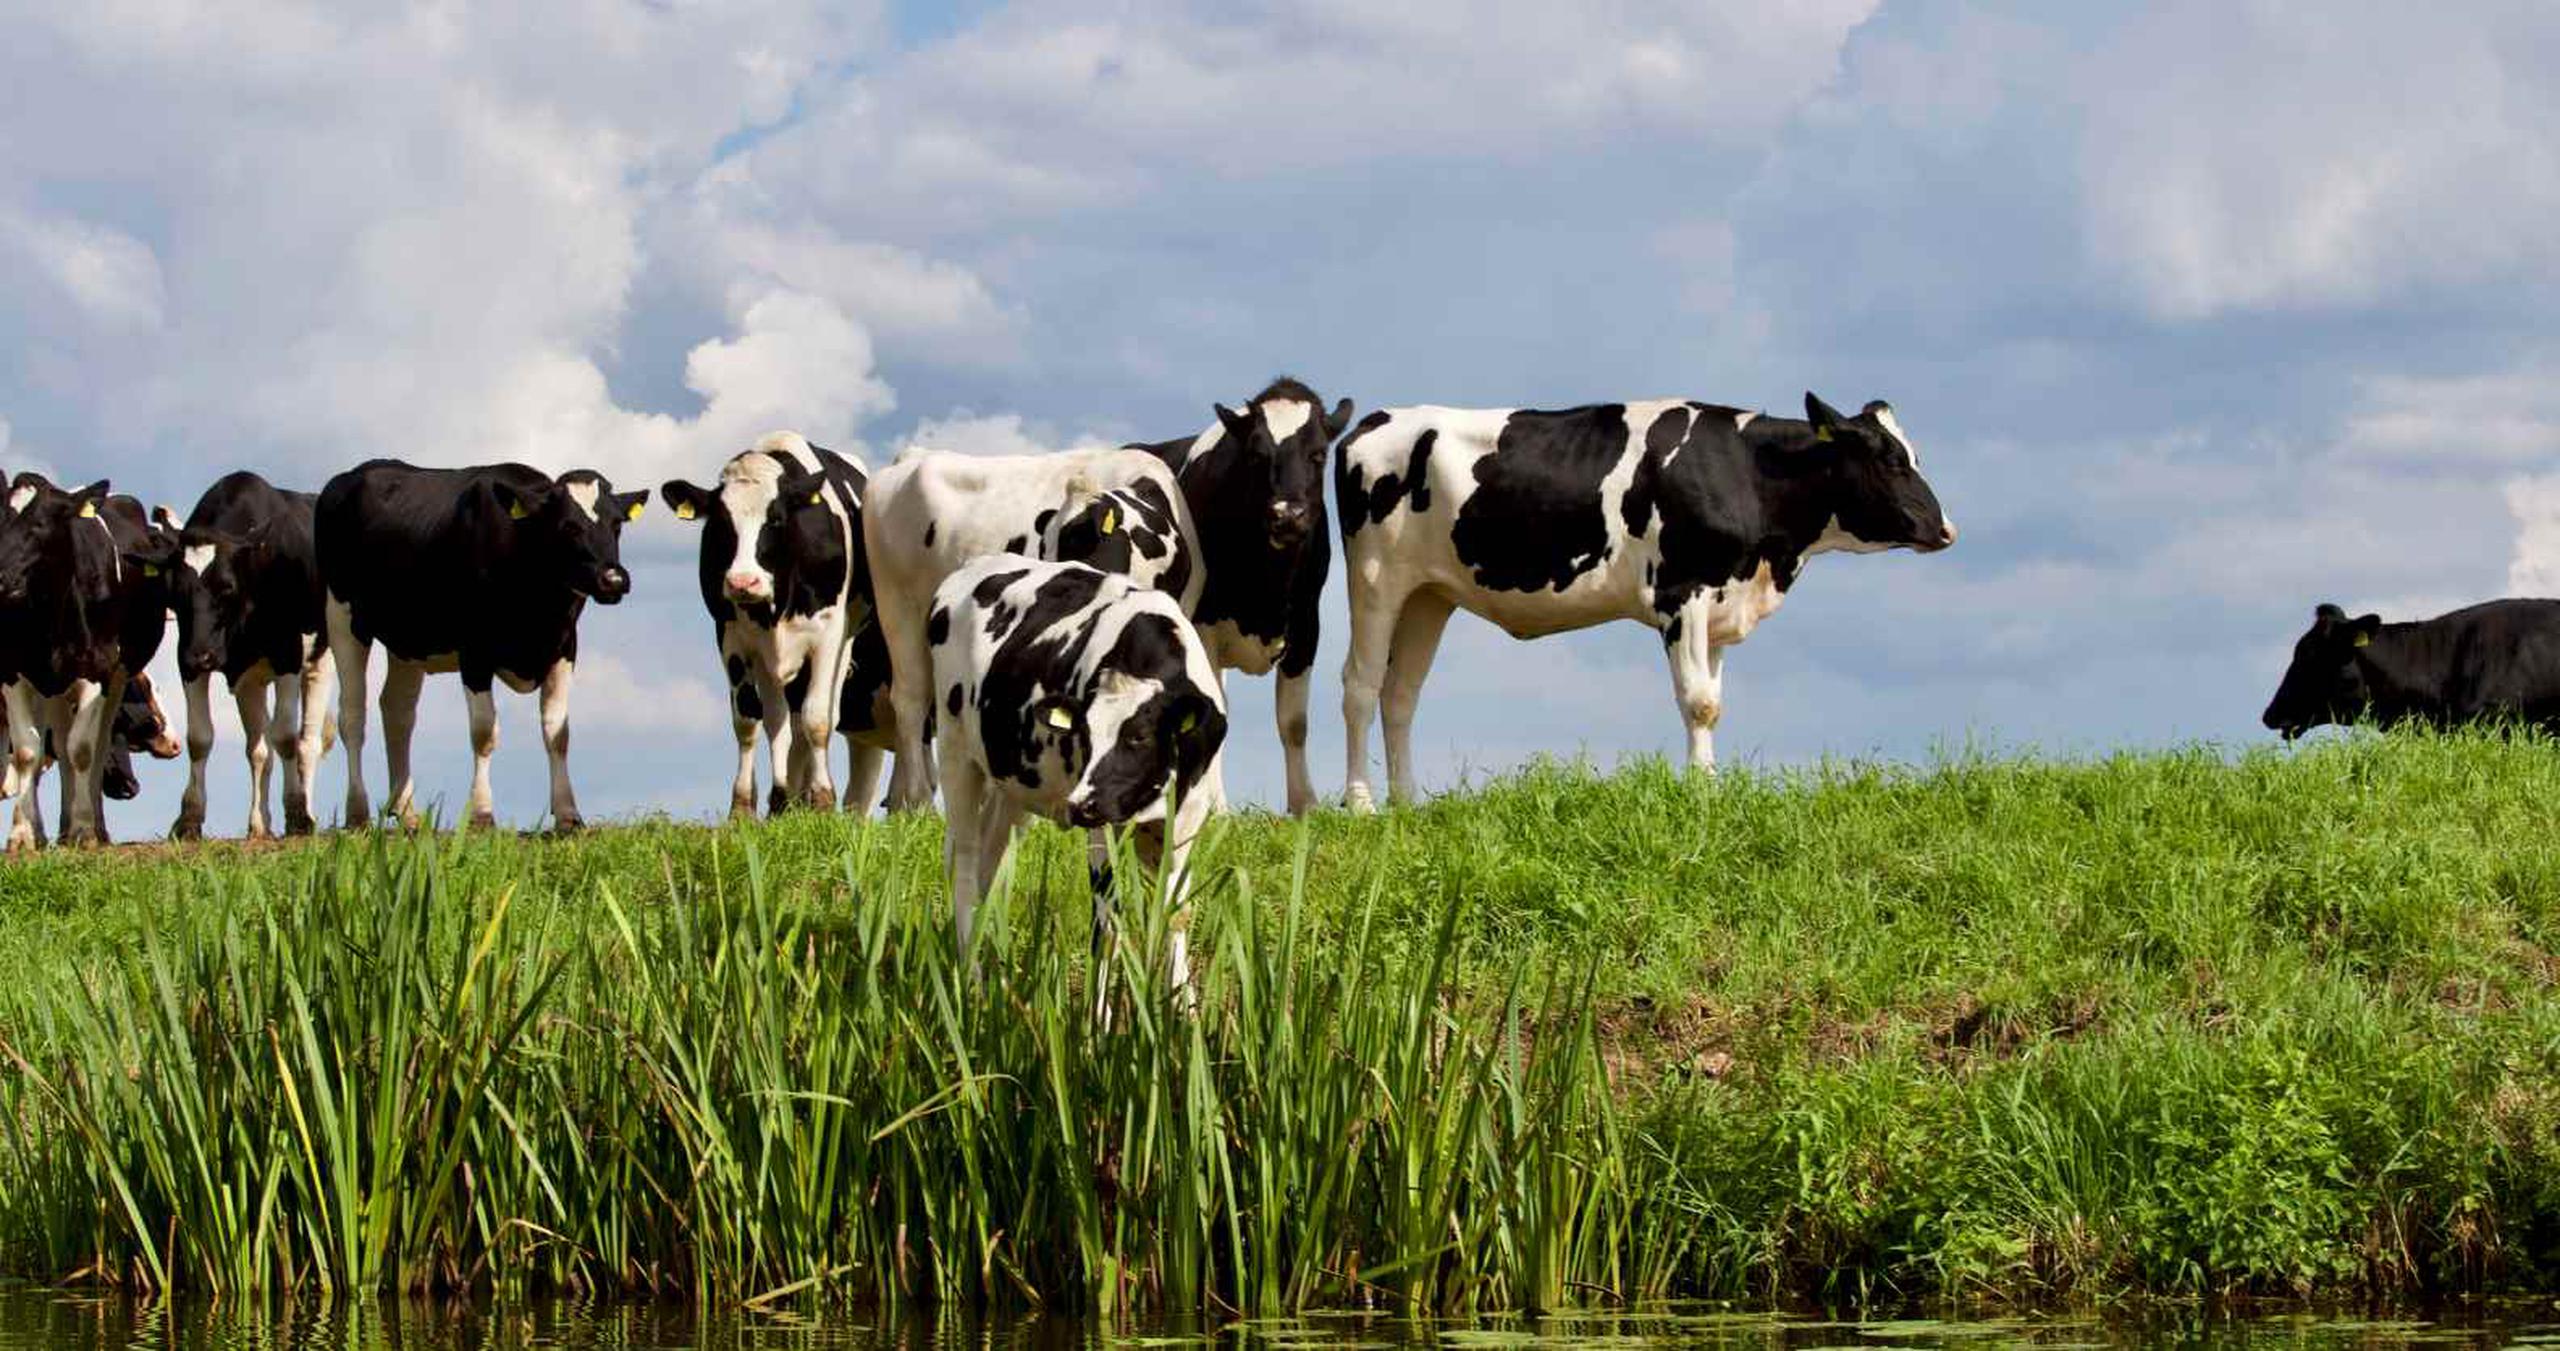 El valor de las vacas fenecidas es de $33,000. (GFR Media)